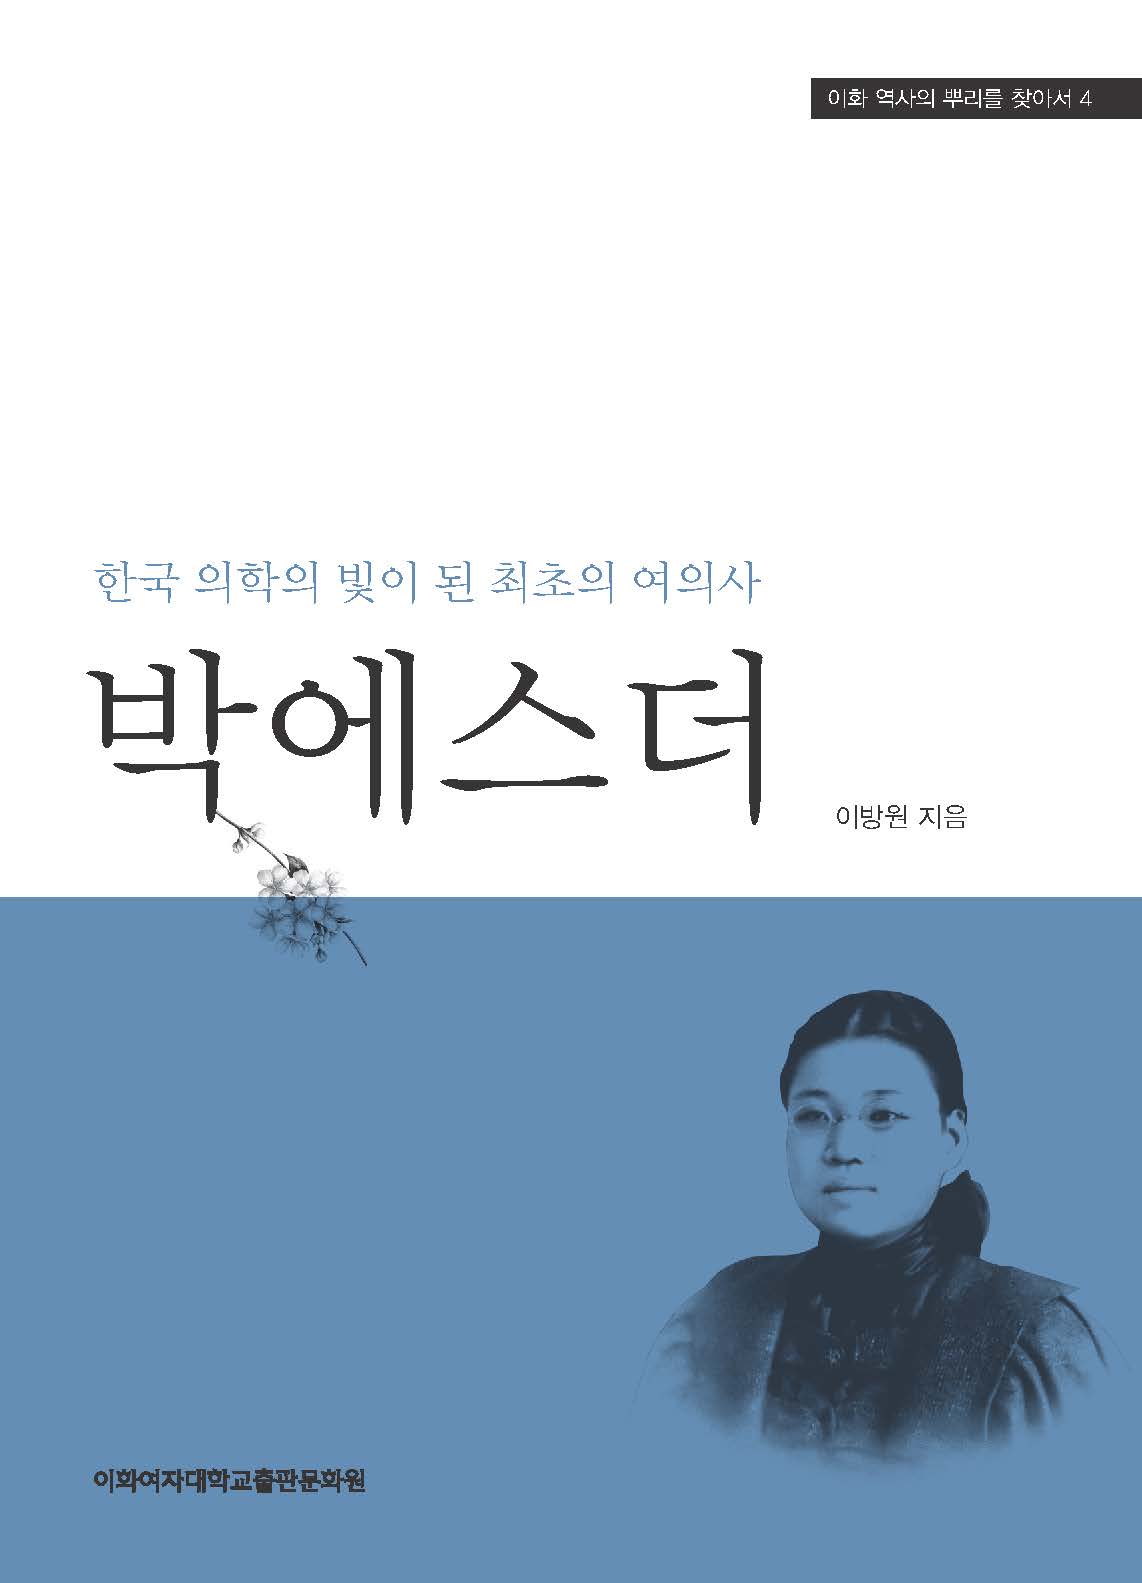 [EBOOK] 박에스더 도서이미지